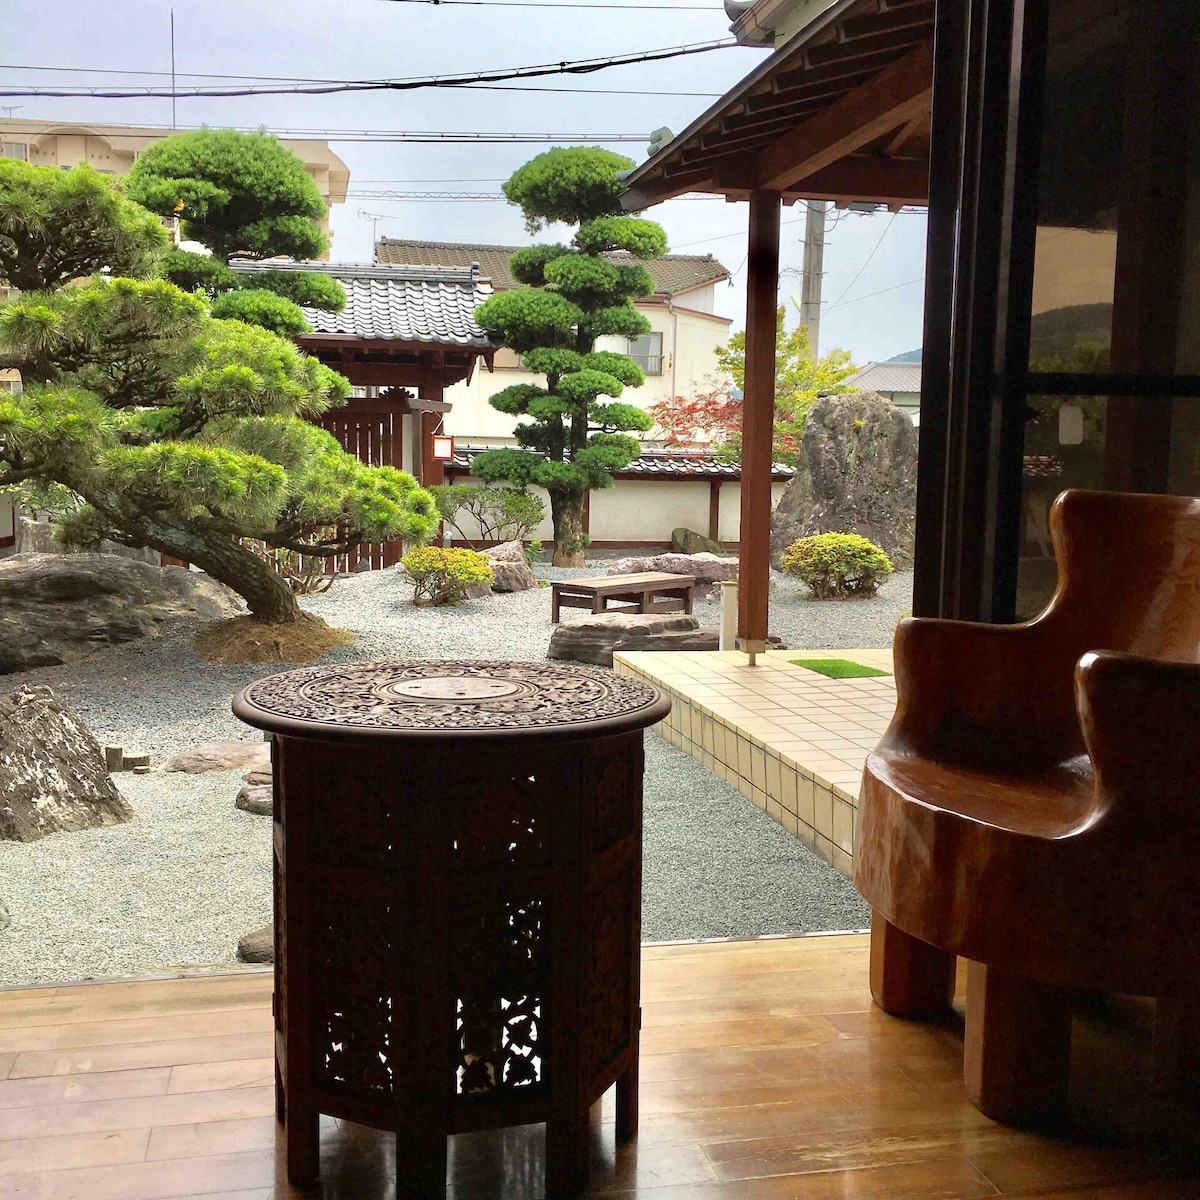 想在石垣（ Ishigaki ）和日式花园环绕的老房子里穿越时光，回到江户时代吗？